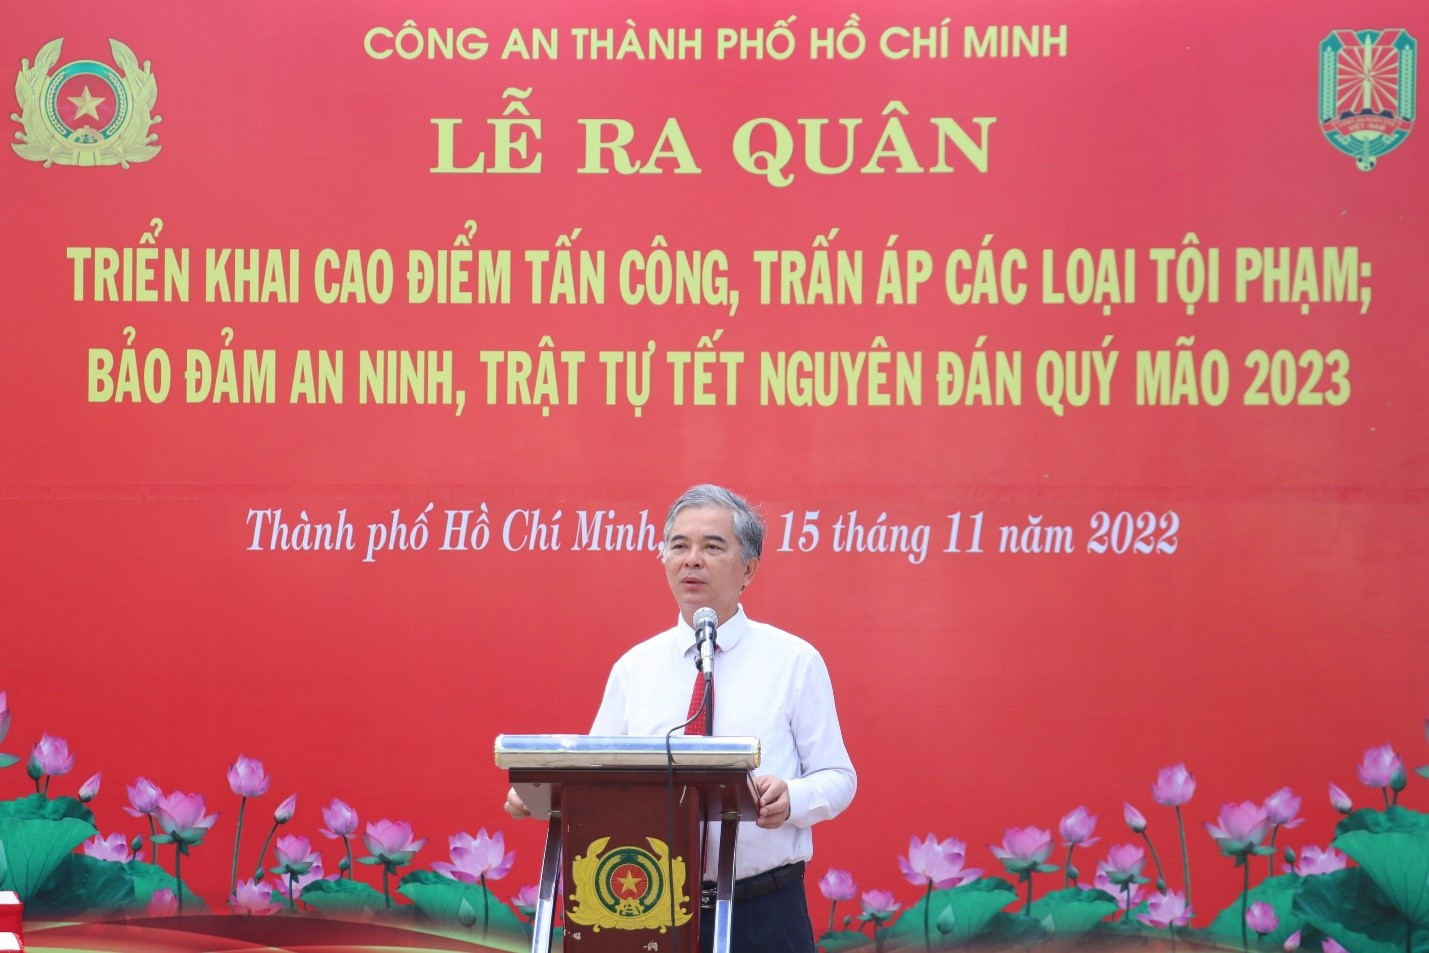 Ông Ngô Minh Châu, Phó Chủ tịch UBND TP HCM biểu dương những thành tích CA TP HCM đạt được trong năm 2022.